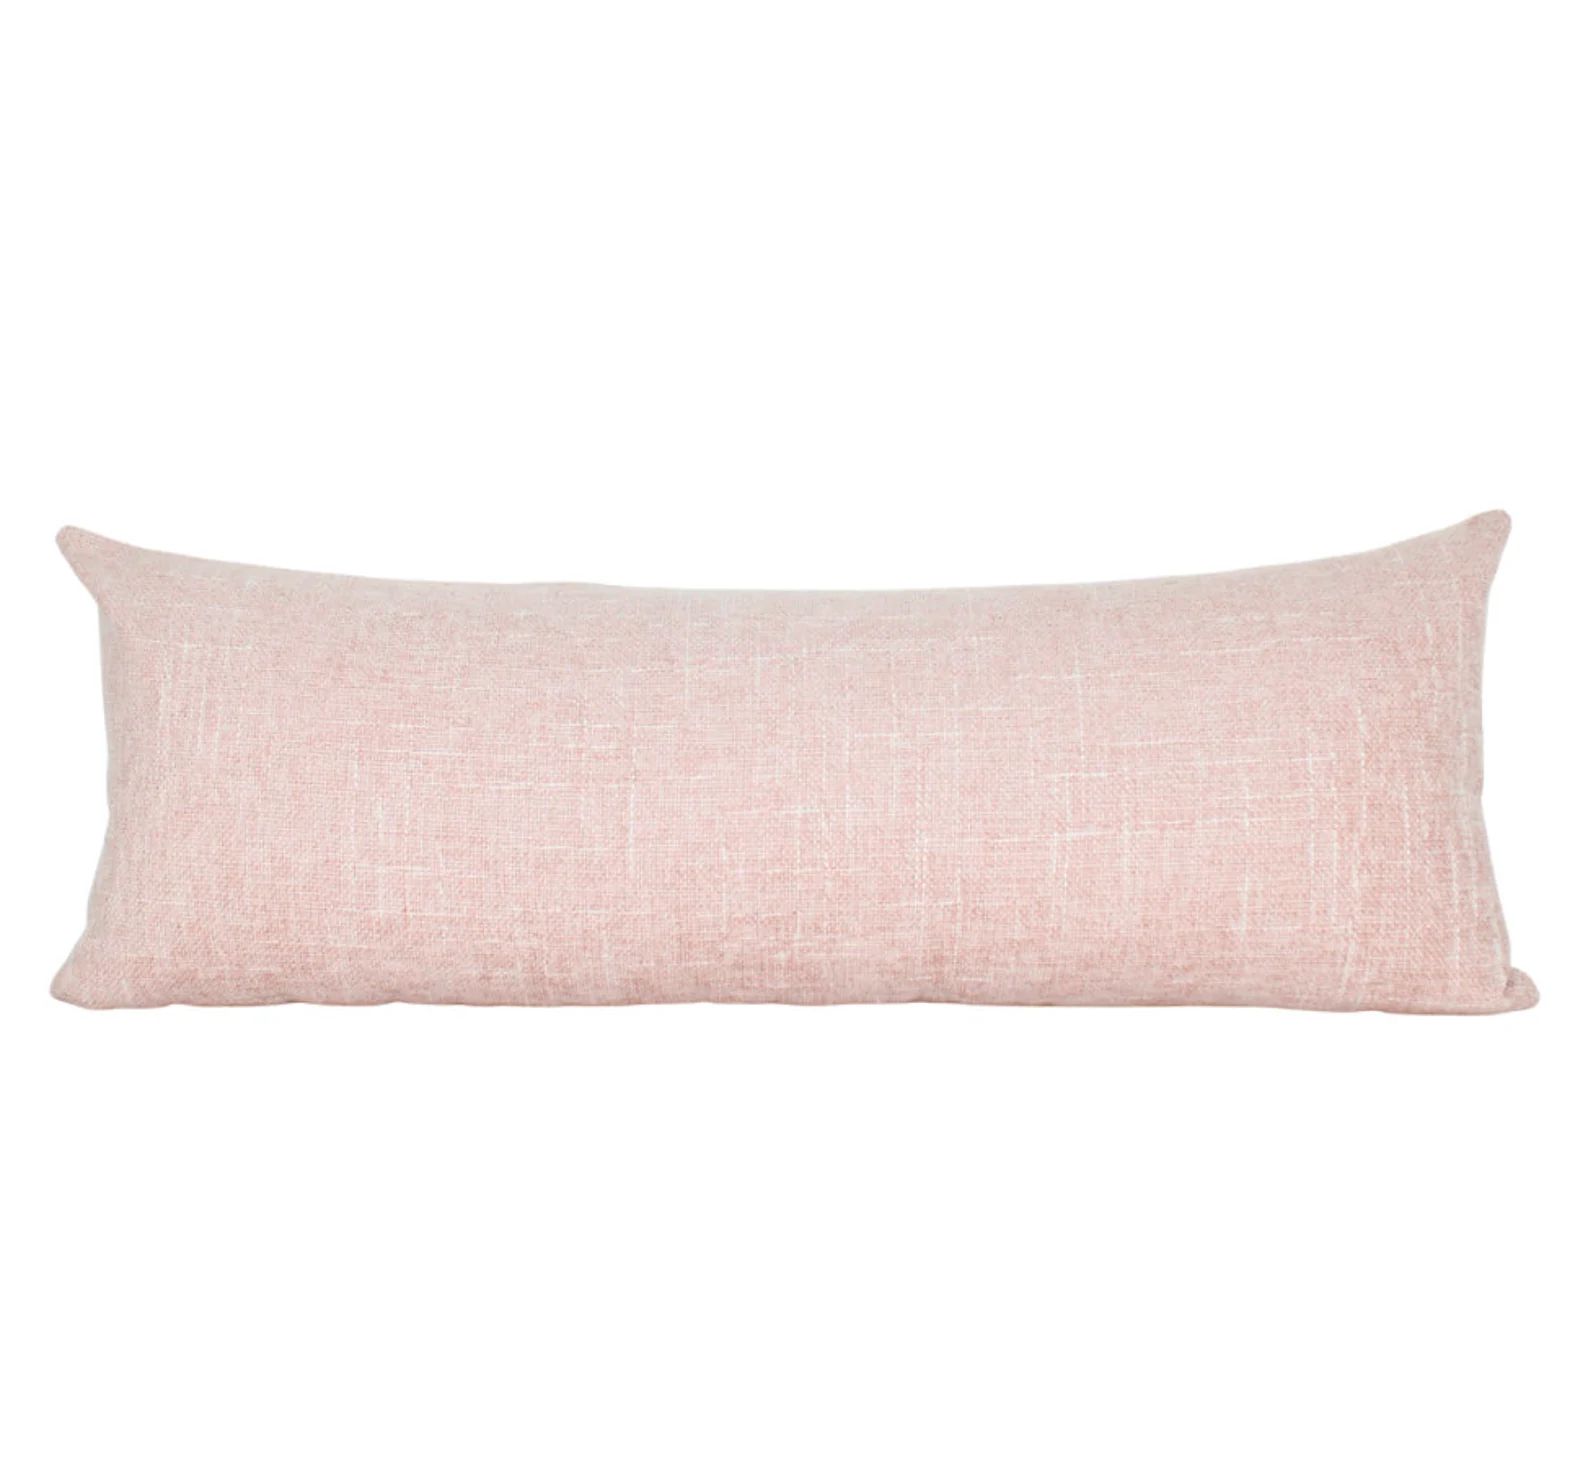 Pink Blush Extra Large Lumbar Cover Pillow Handwoven Pillow Covers 14x36 Lumbar Pillow Covers Ado... | Etsy (US)